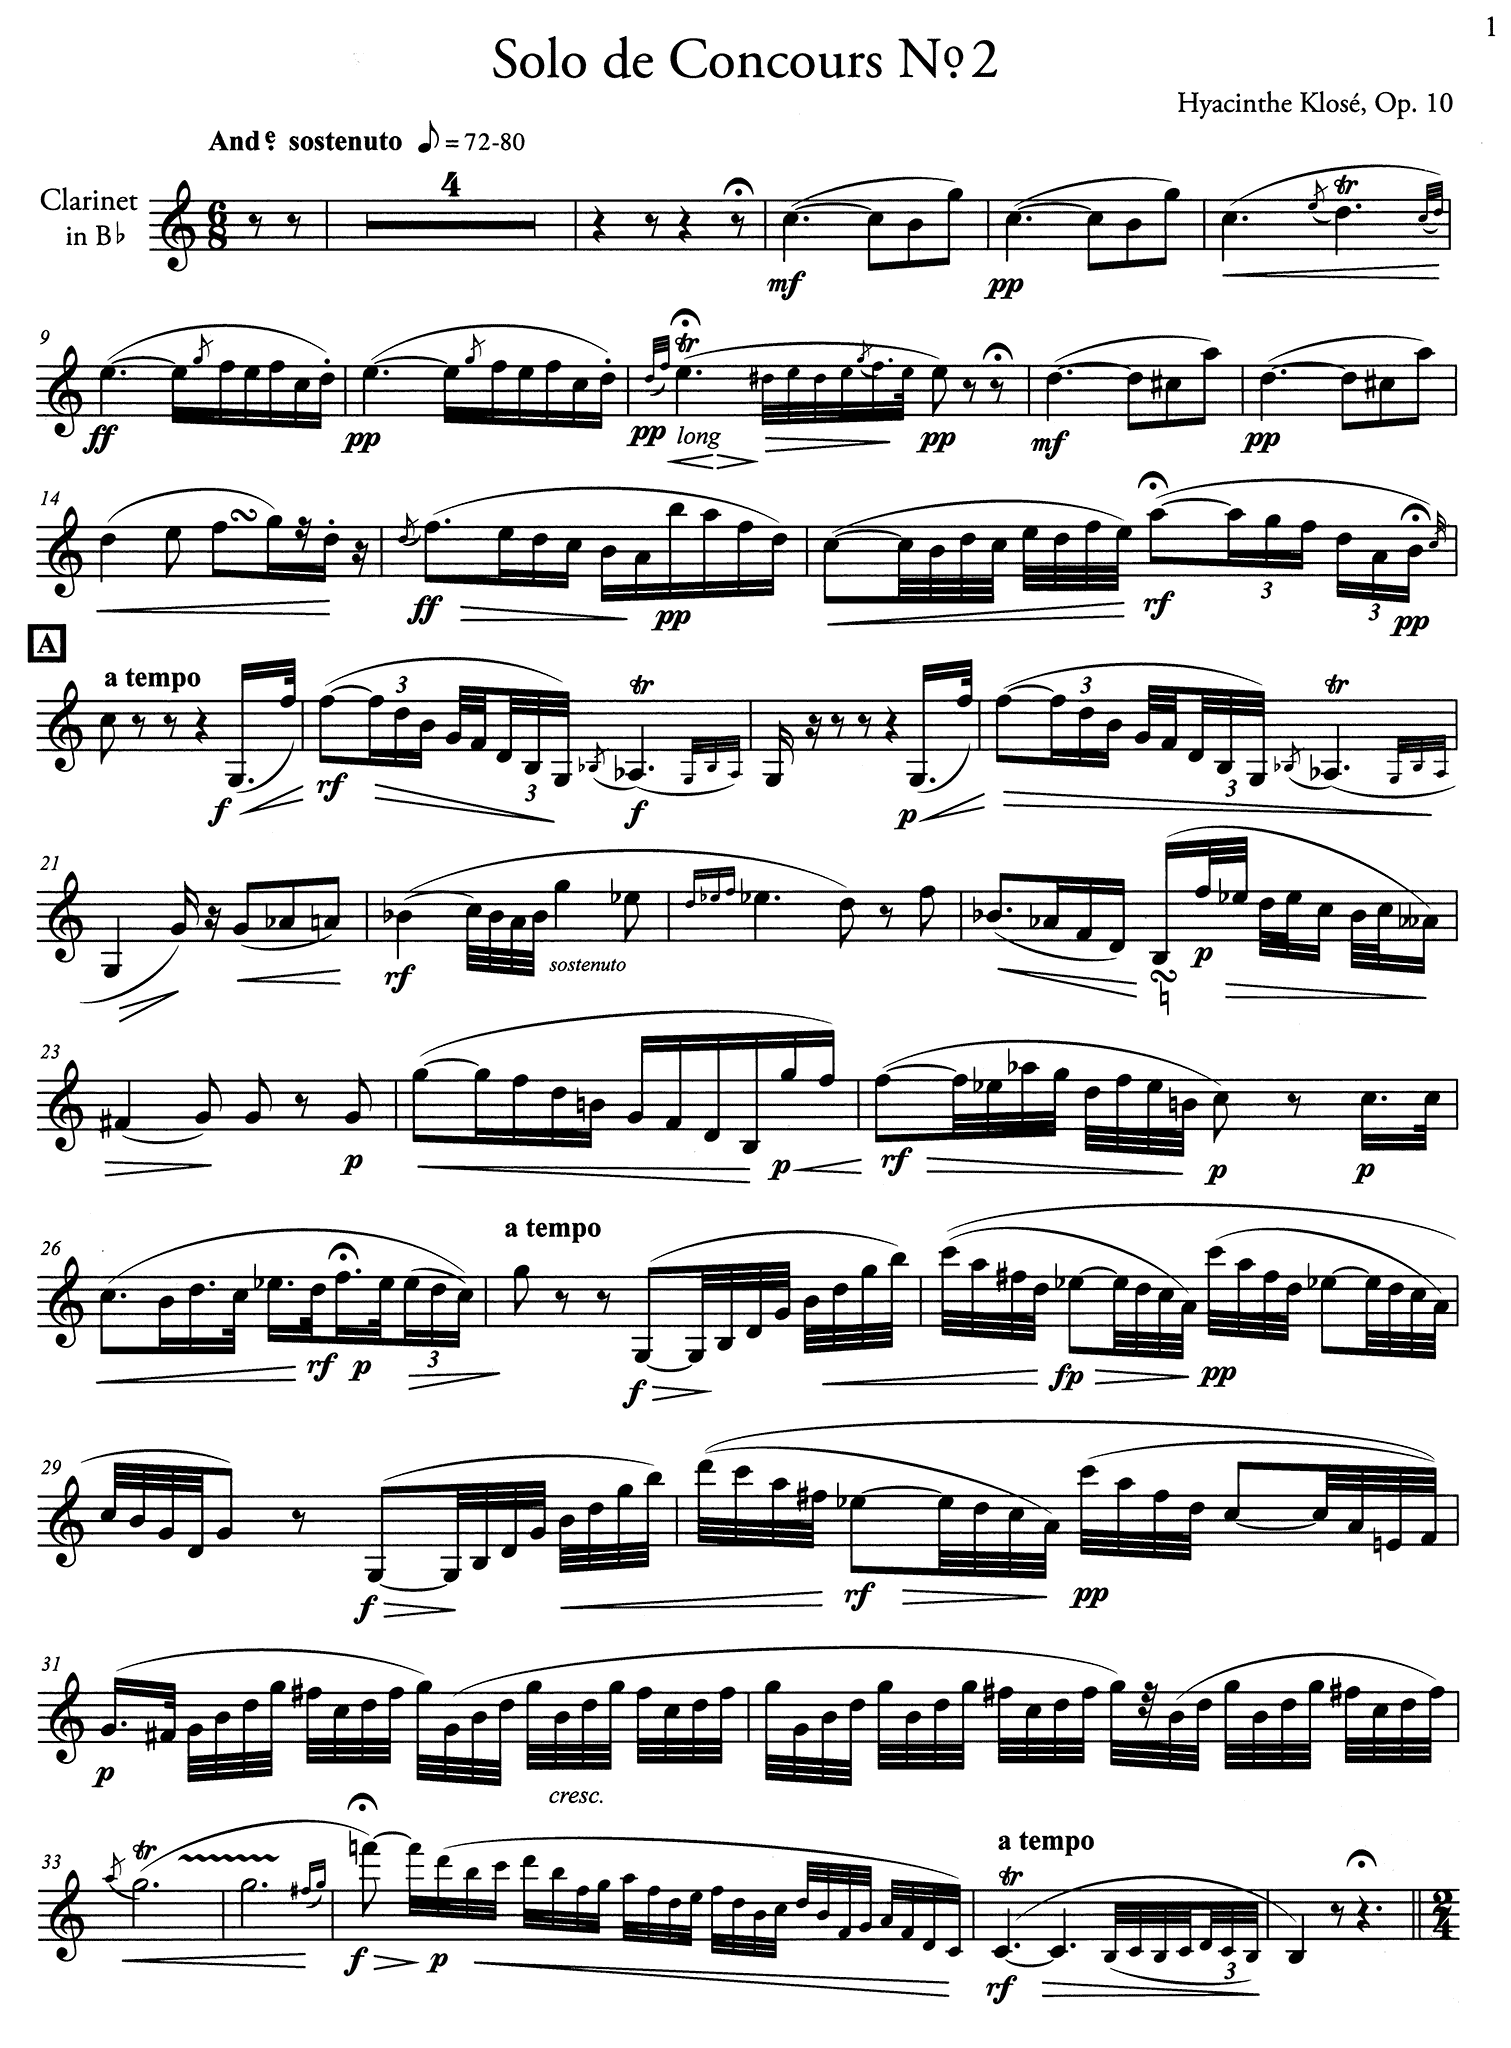 Klosé Solo de concours No. 2, Op. 10 clarinet part